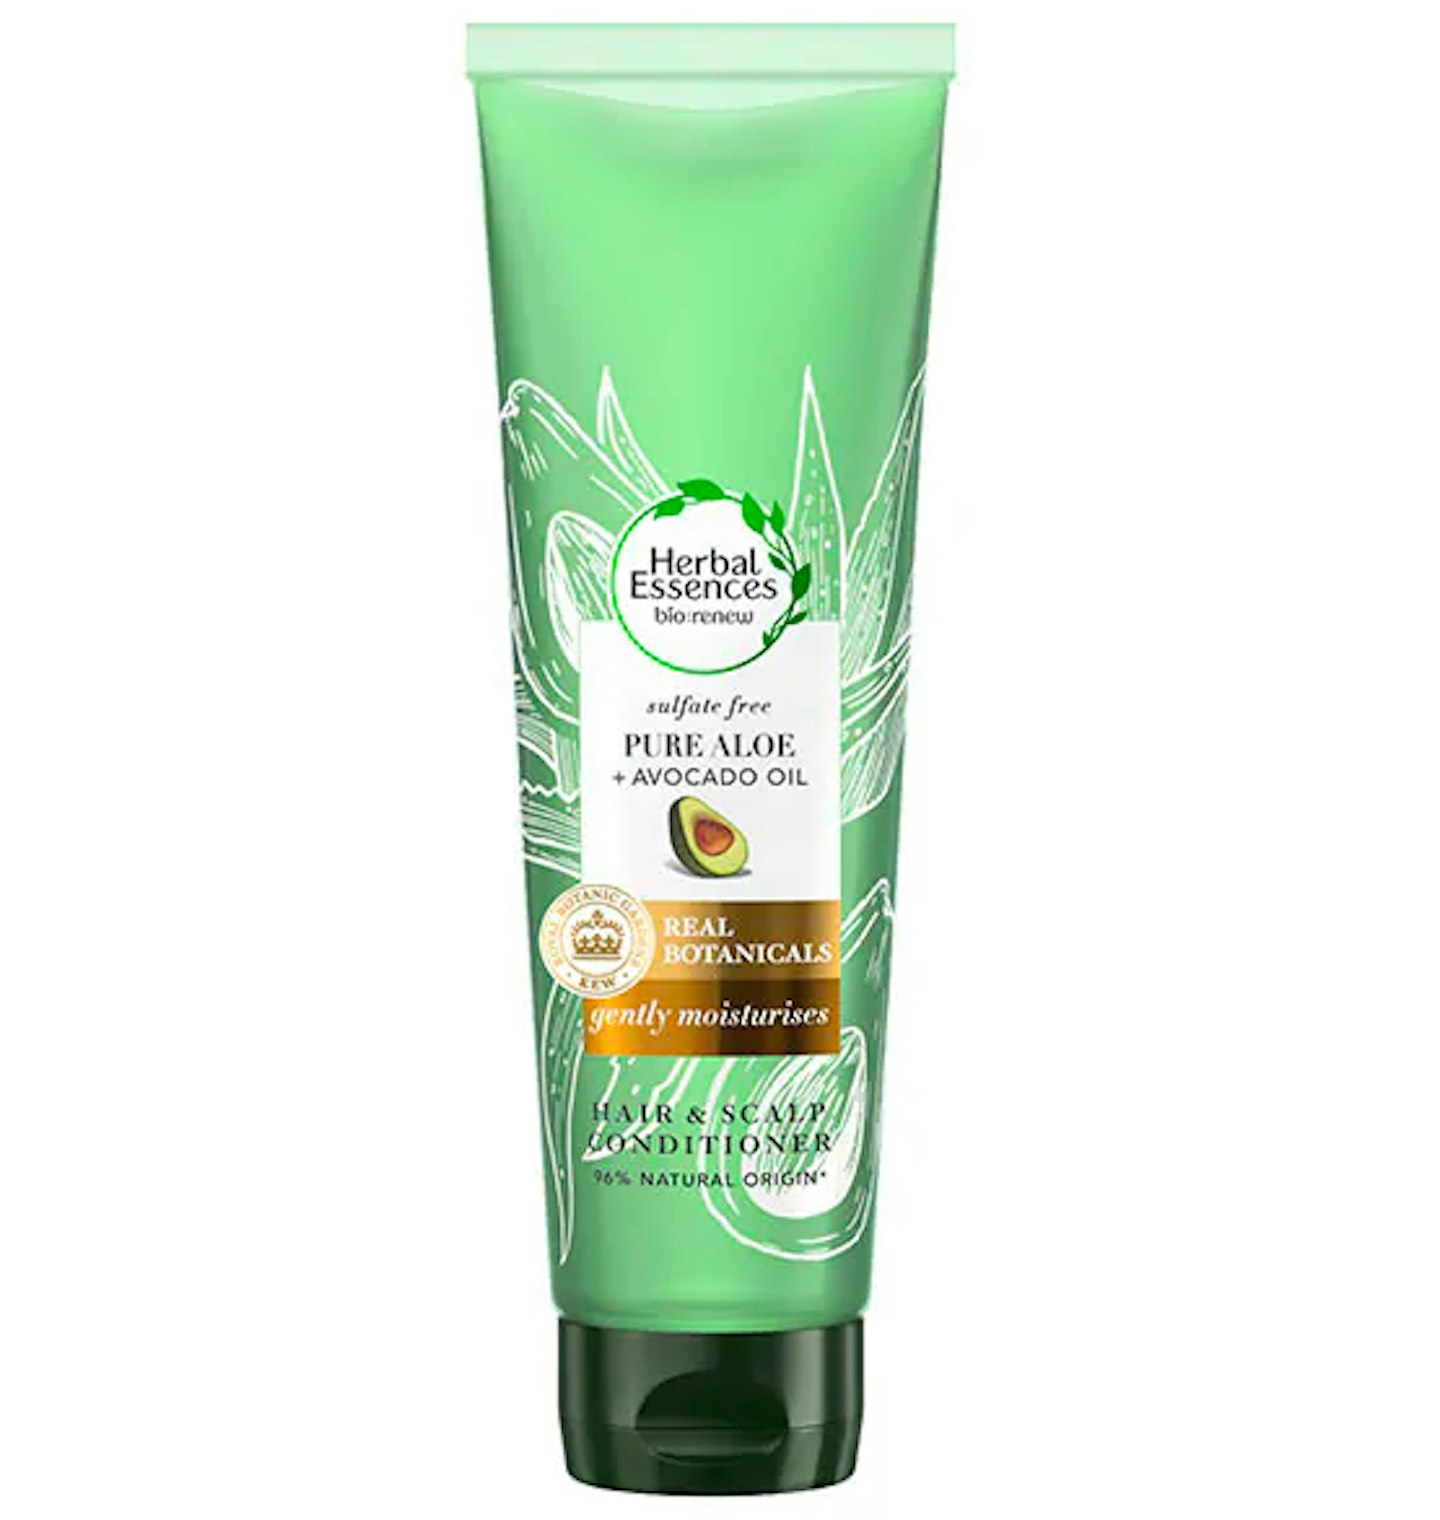 Herbal Essences Hair Conditioner, Aloe + Avocado Oil